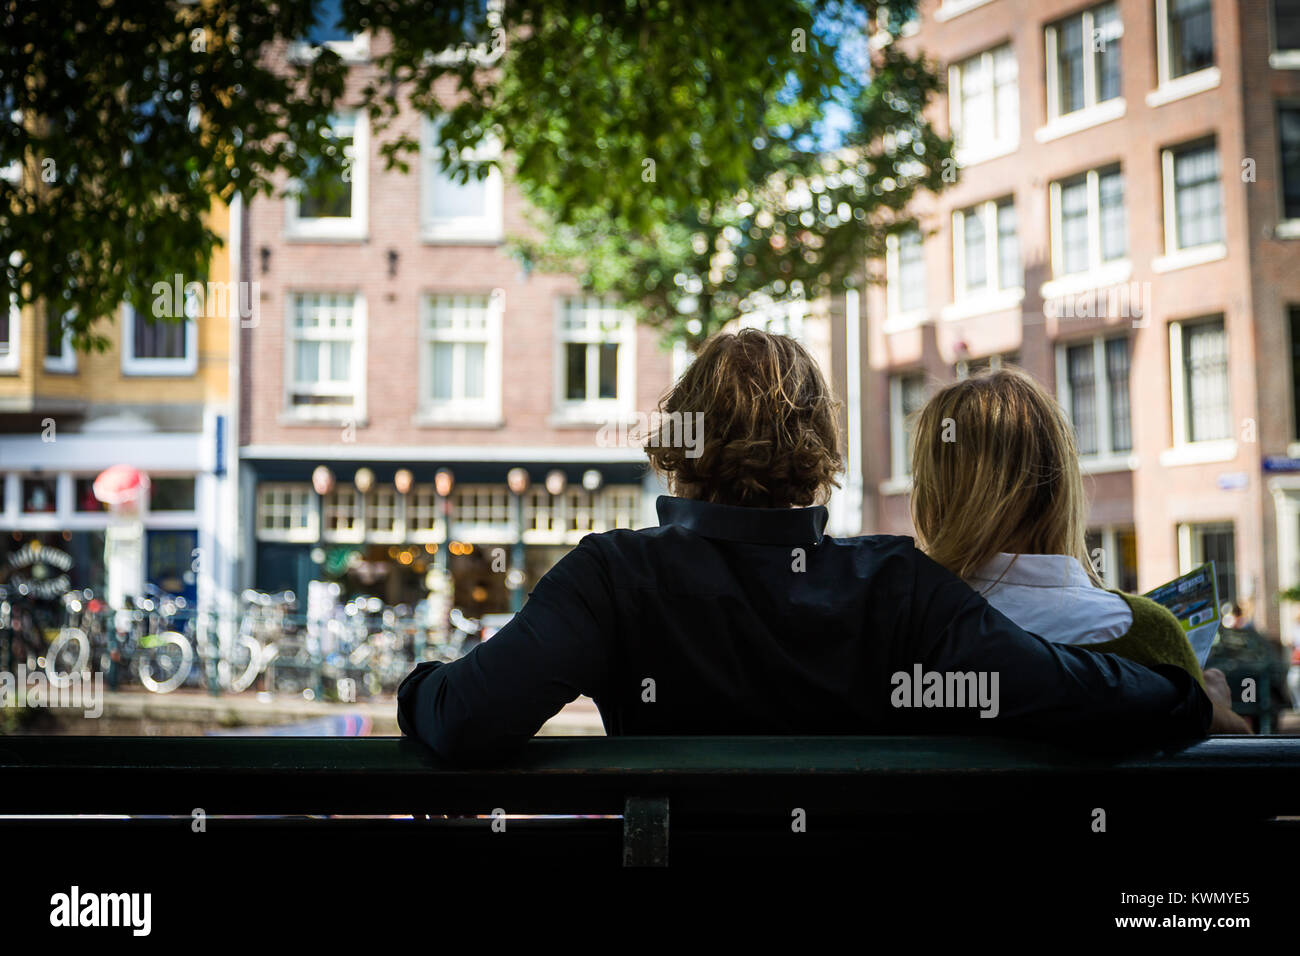 Coppia romantica seduta a braccetto su un banco di urbano che si affaccia su case a schiera con le biciclette parcheggiate al di sotto guardando dalla parte posteriore Foto Stock